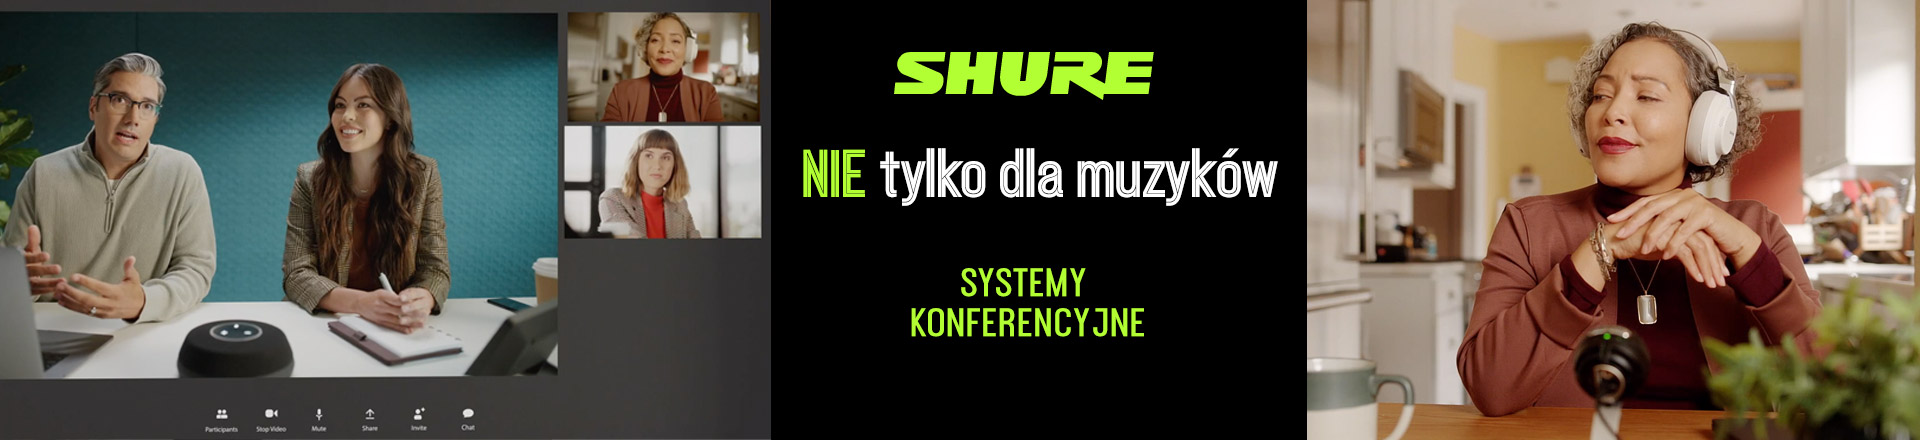 Shure – sprzęt najwyższej klasy nie tylko dla muzyków